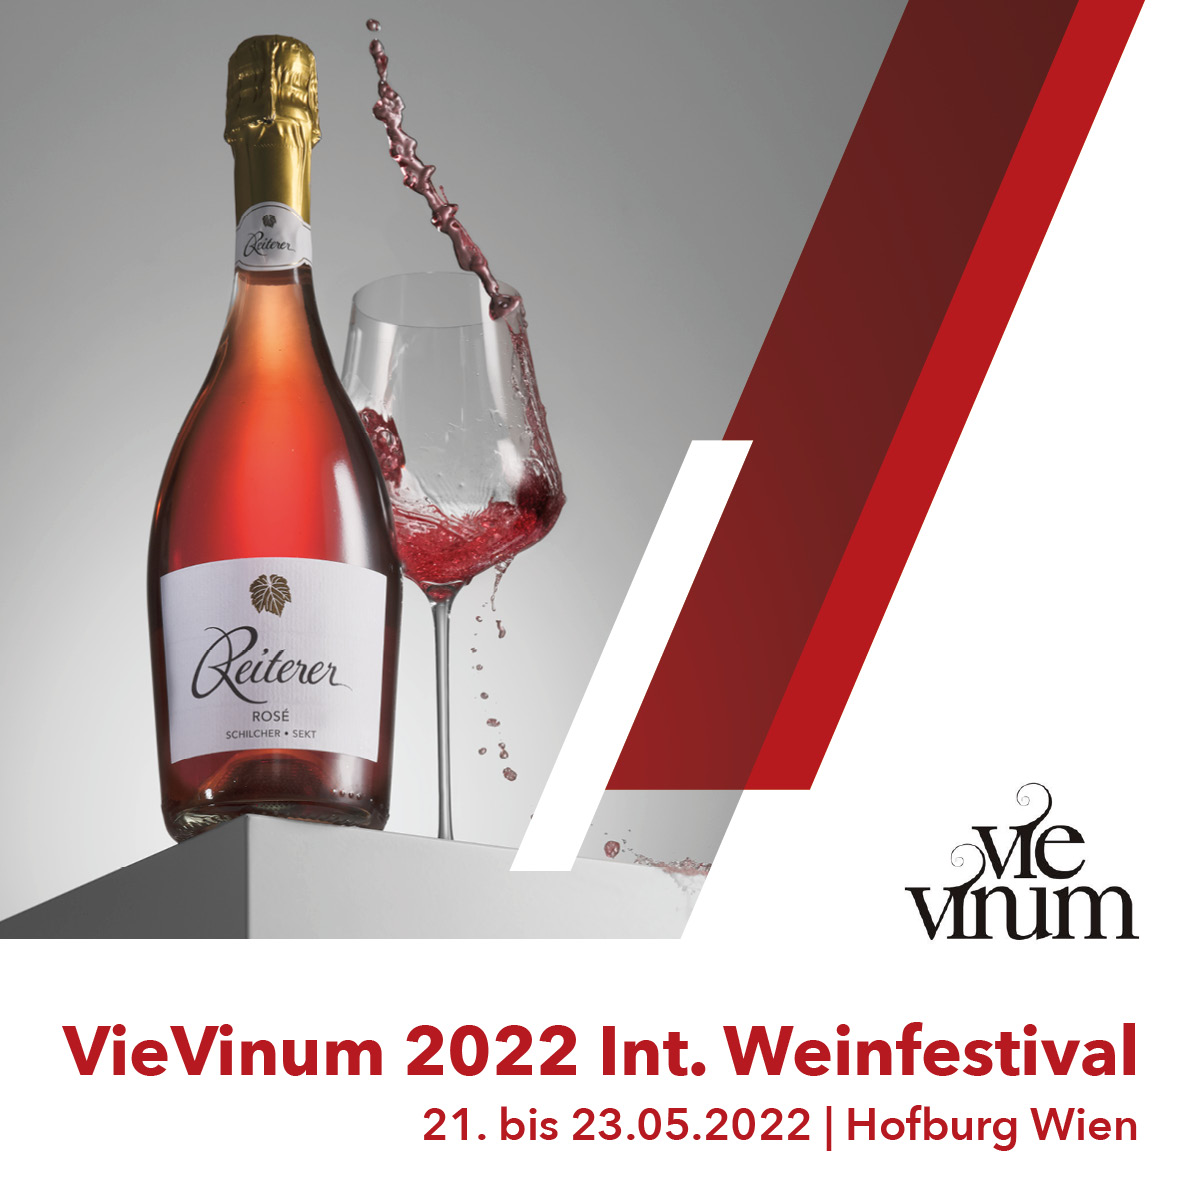 05 Reiterer Veranstaltung VieVinum2022 IG FB